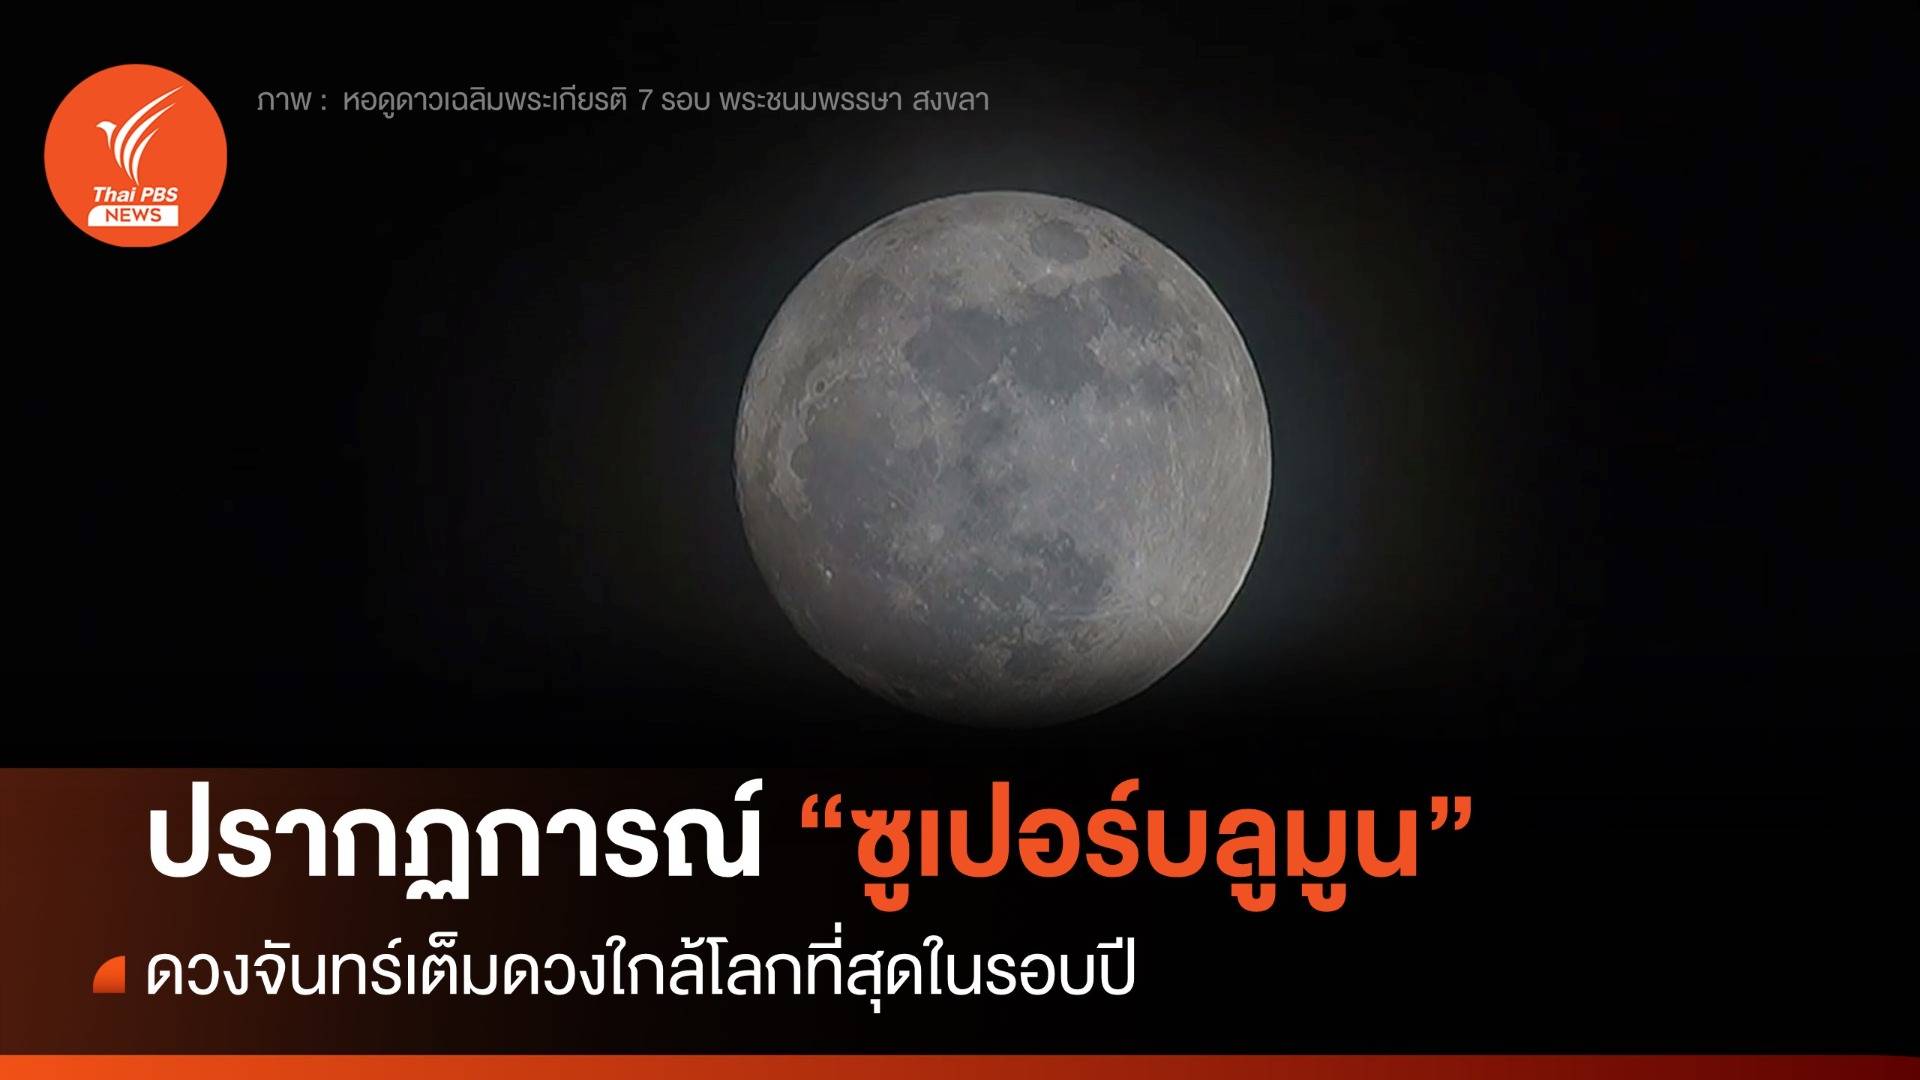 ไม่ผิดหวัง! "ซูเปอร์บลูมูน" ดวงจันทร์เต็มดวงใกล้โลกที่สุดในรอบปี